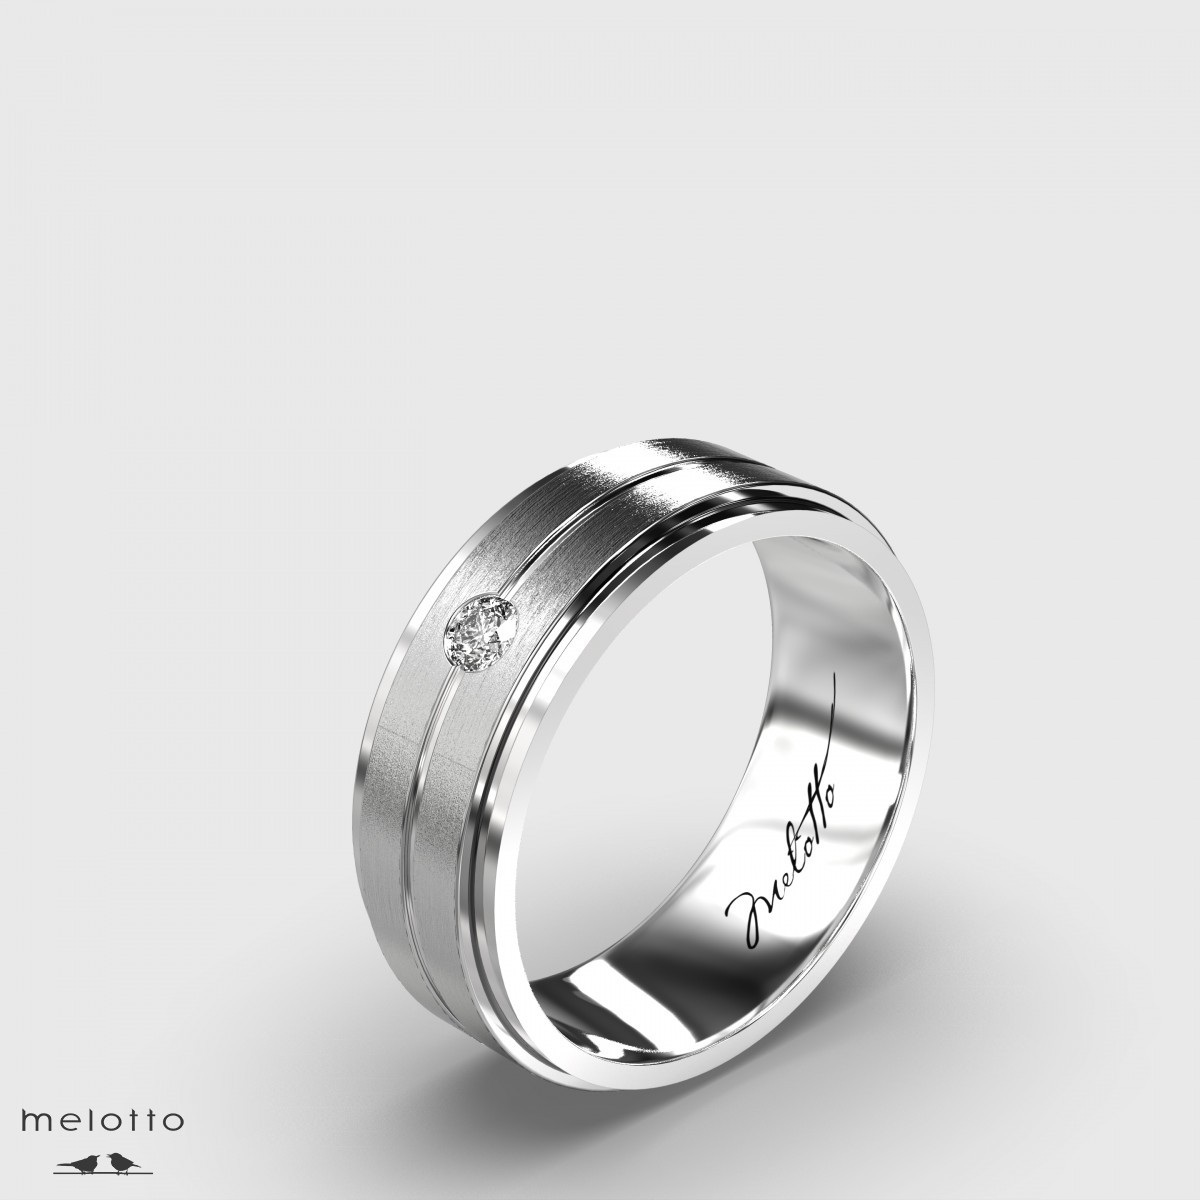 Элегантное обручальное кольцо из белого золота с матовым центром